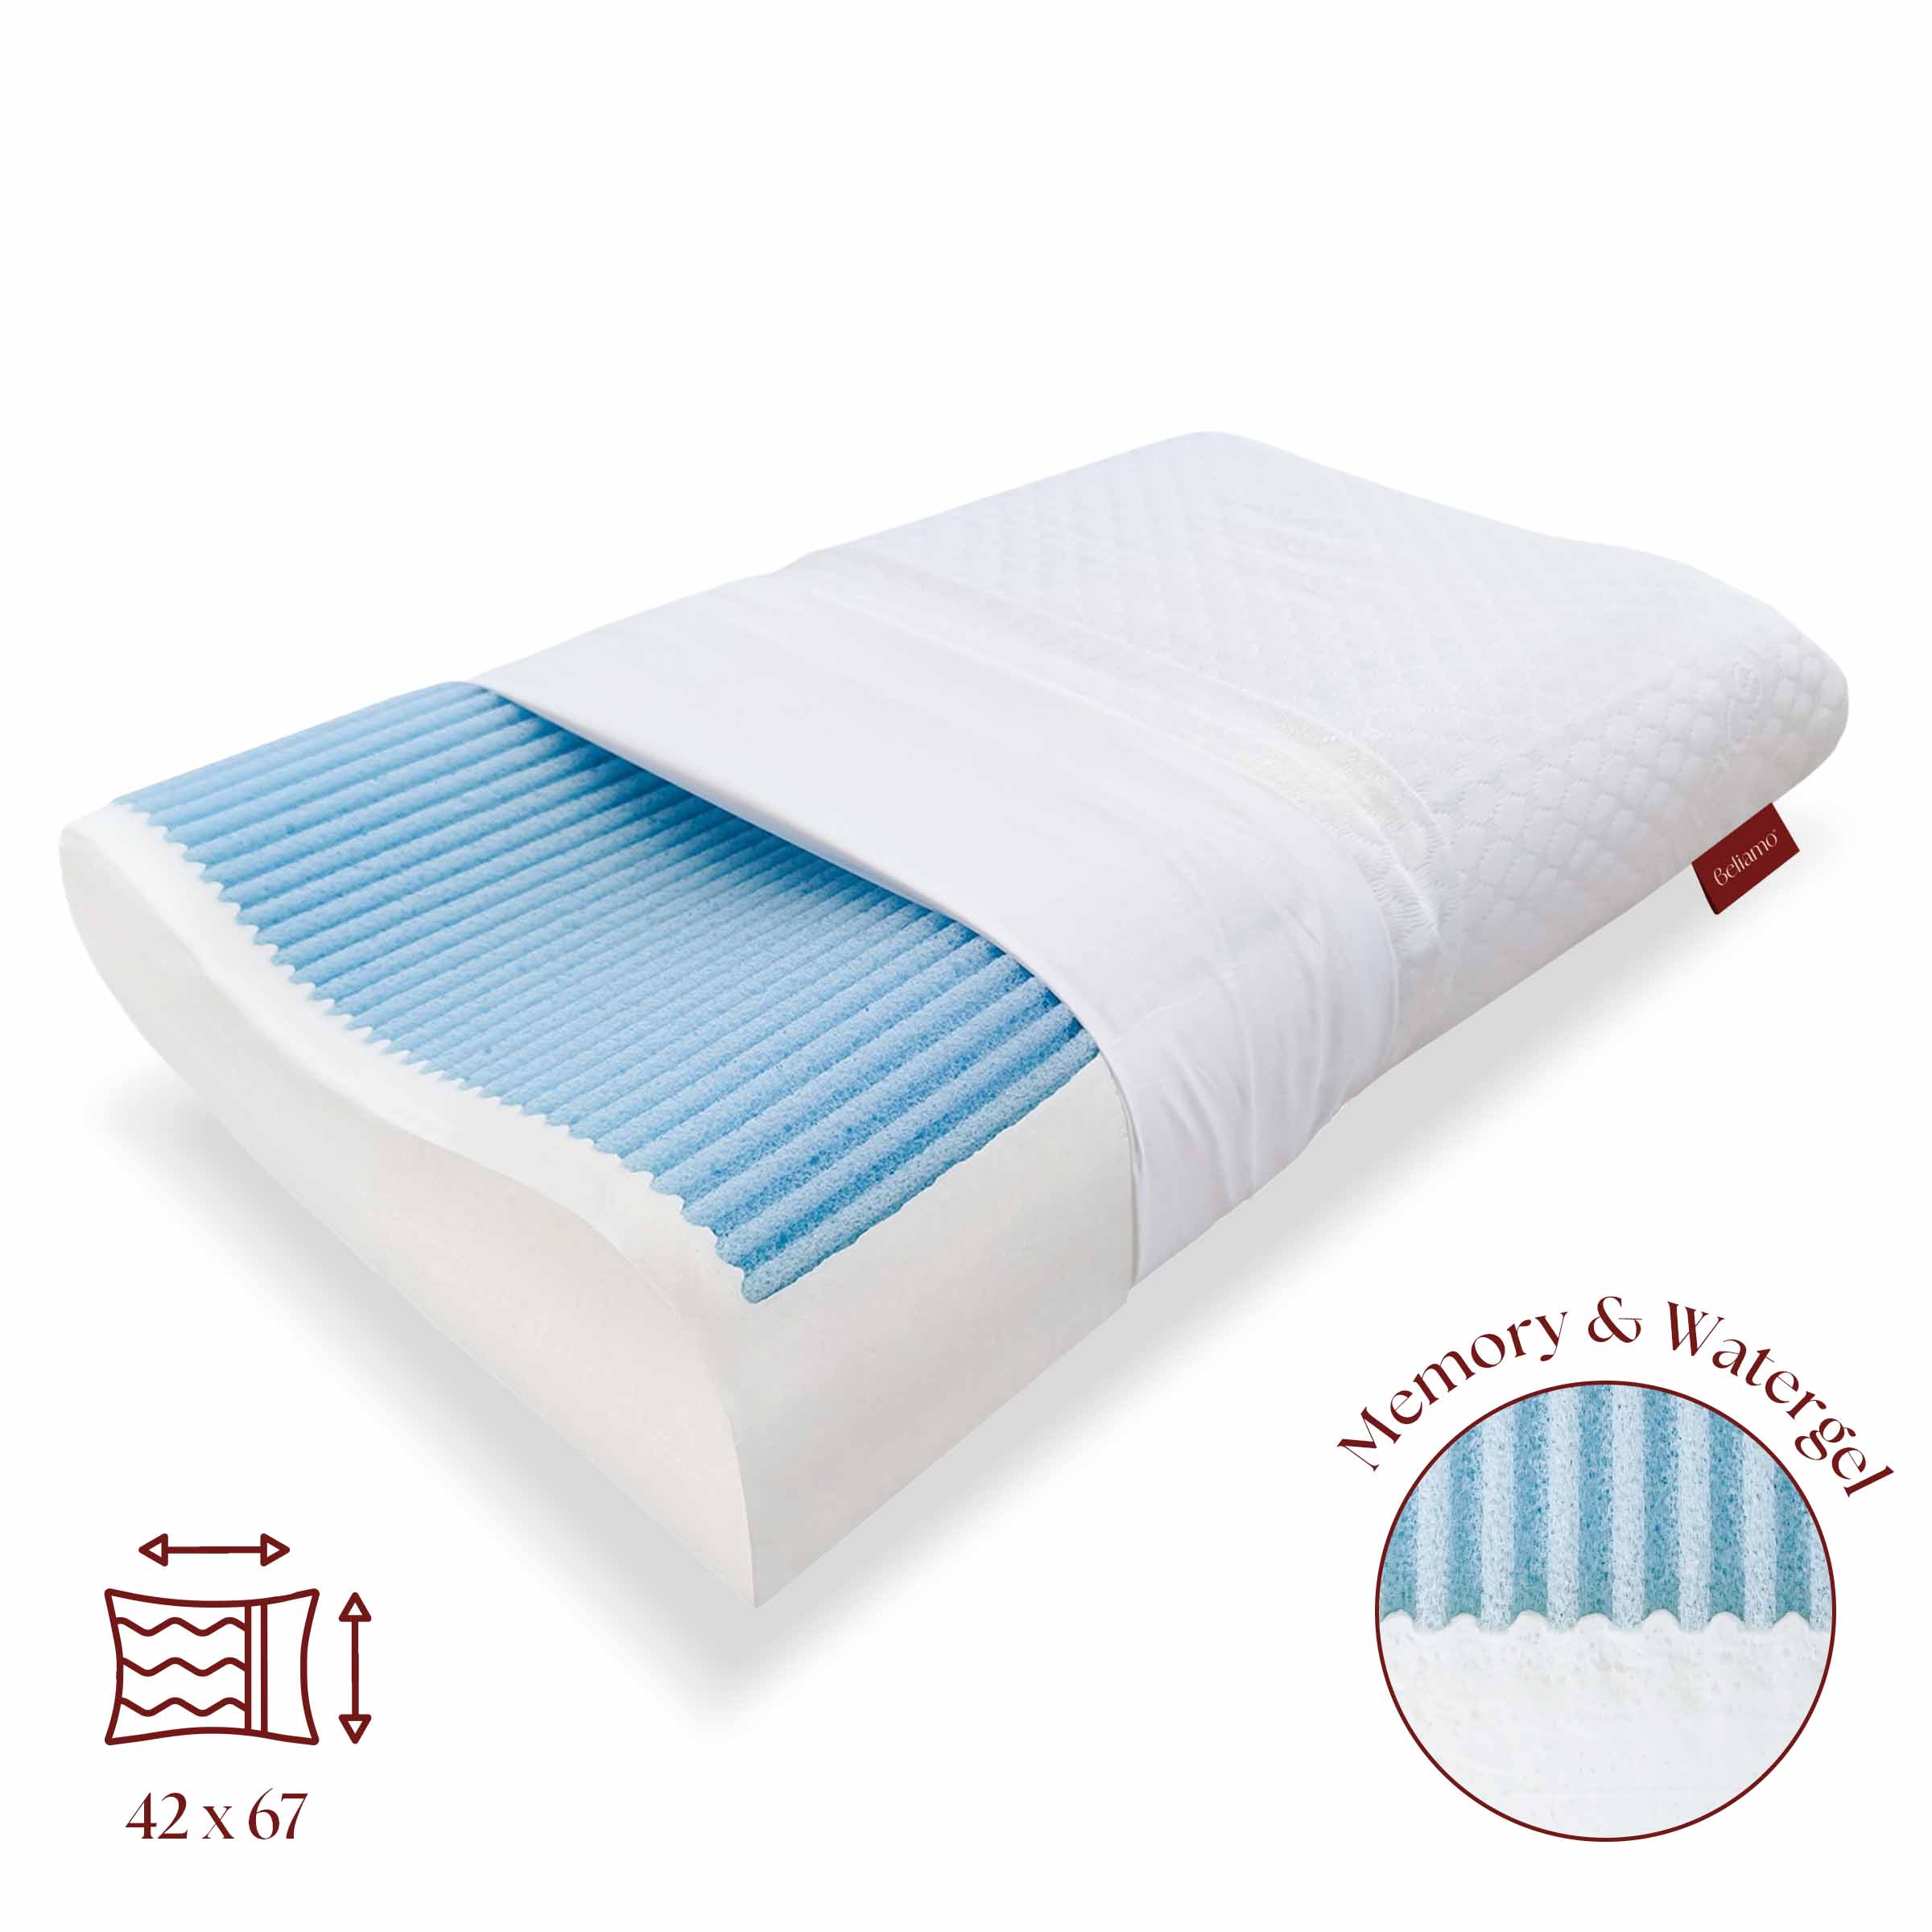 Cuscino cervicale Lignano in memory foam e water gel di Beliamo, ideale per un supporto ottimale e un sonno rinfrescante